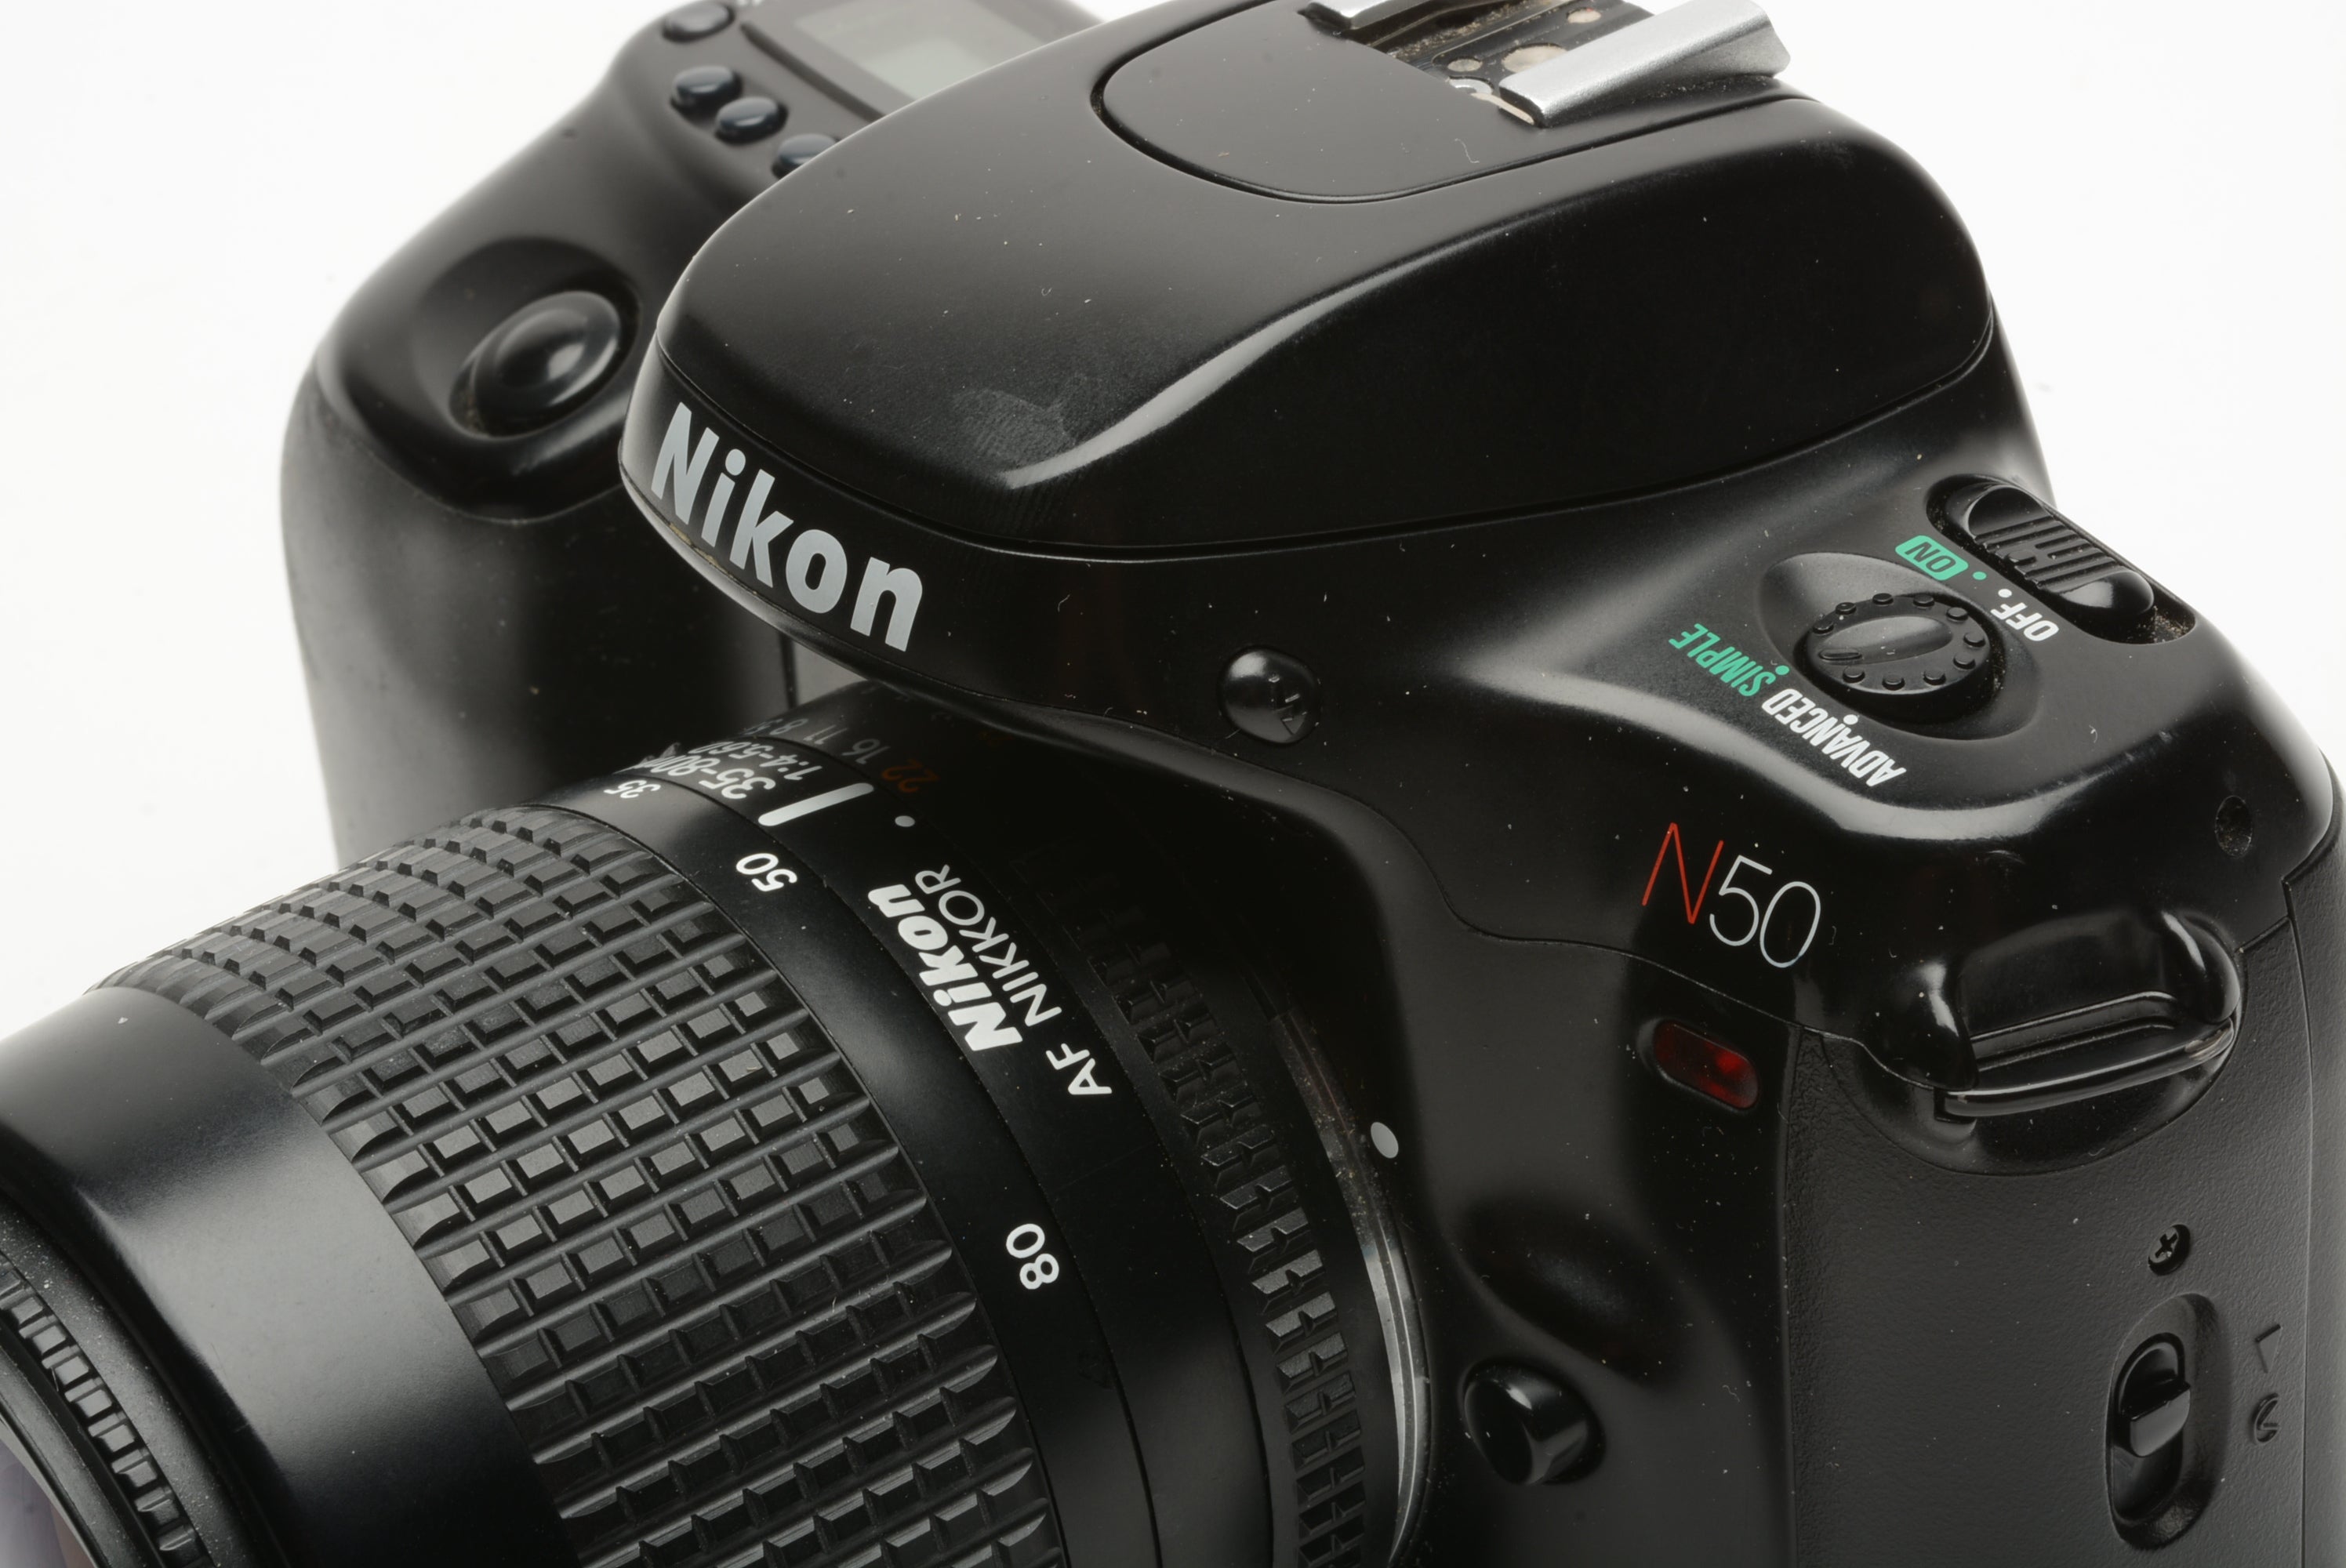 Nikon N50 QD 35mm SLR w/AF 35-80mm f4-5.6D zoom, cap, case, strap